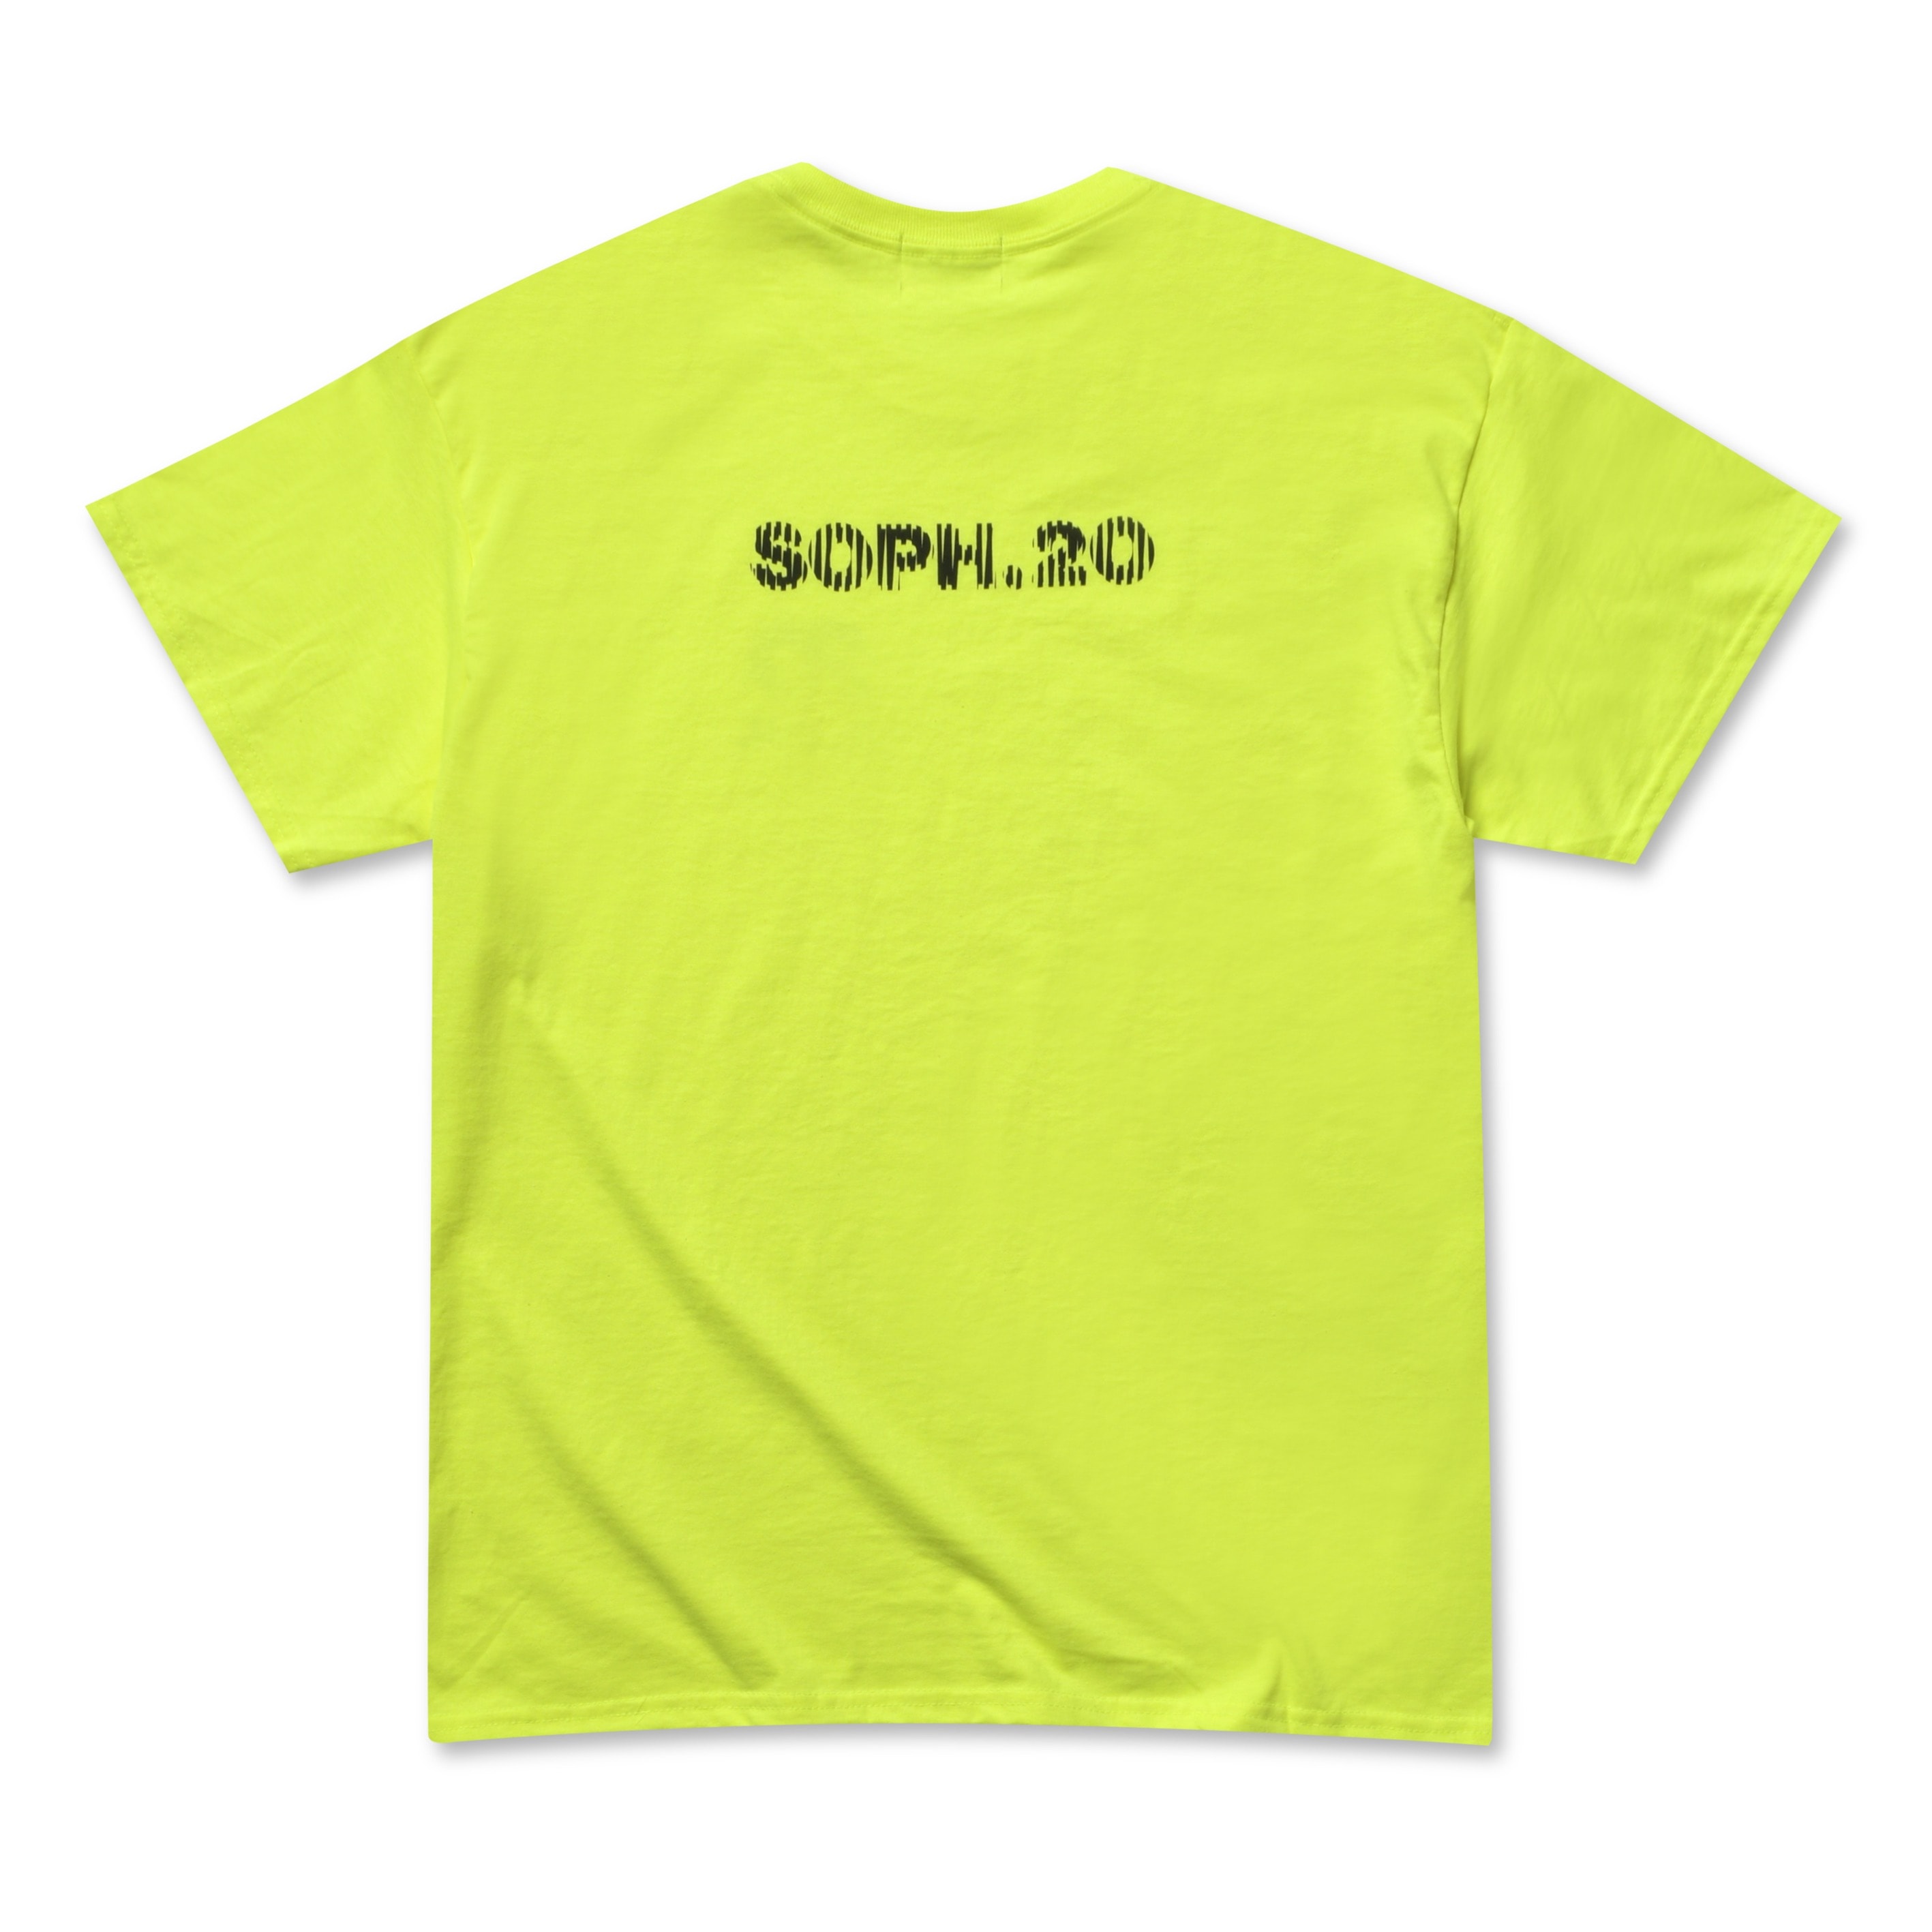 SOPHNET. 20 週年年期間限定「SOPH.20」系列登場